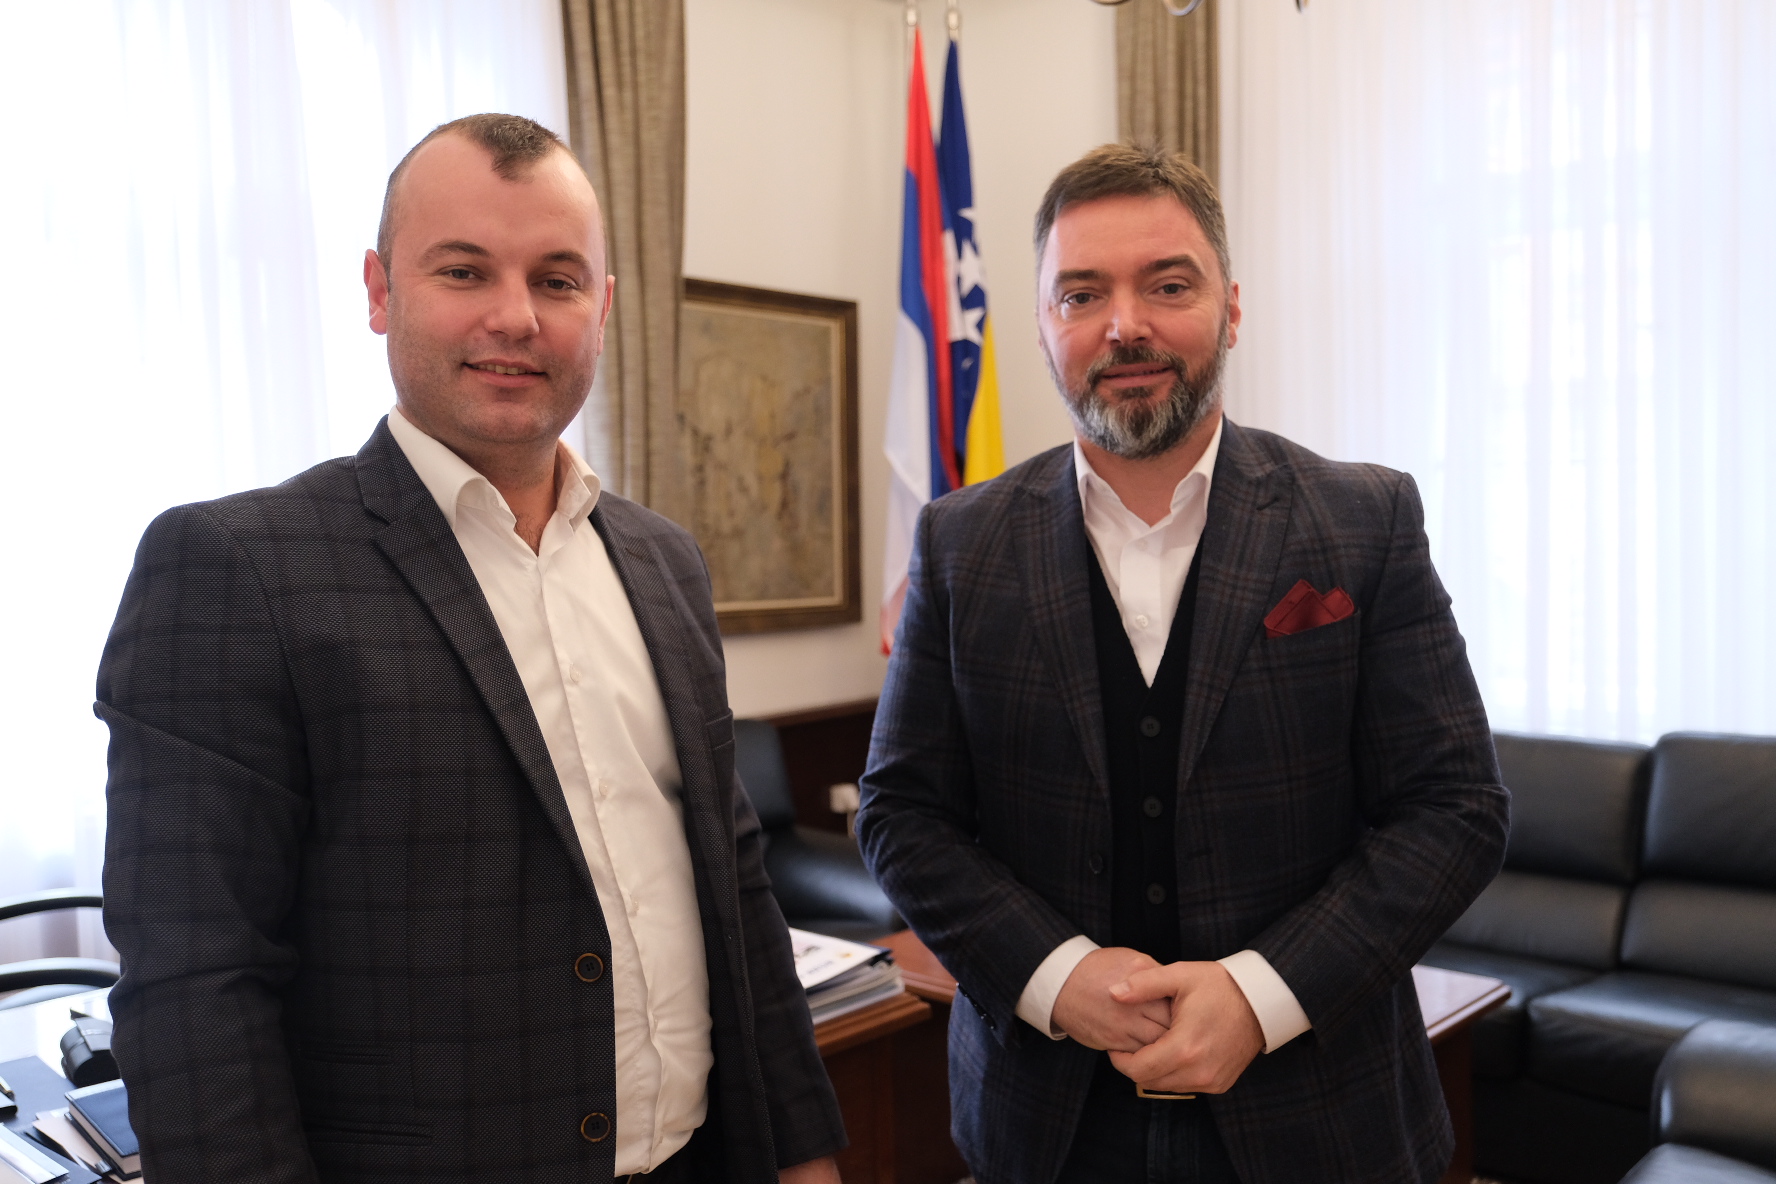 Picture for Ministar Košarac i načelnik Grujičić o aktuelnim ekonomskim i političkim temama